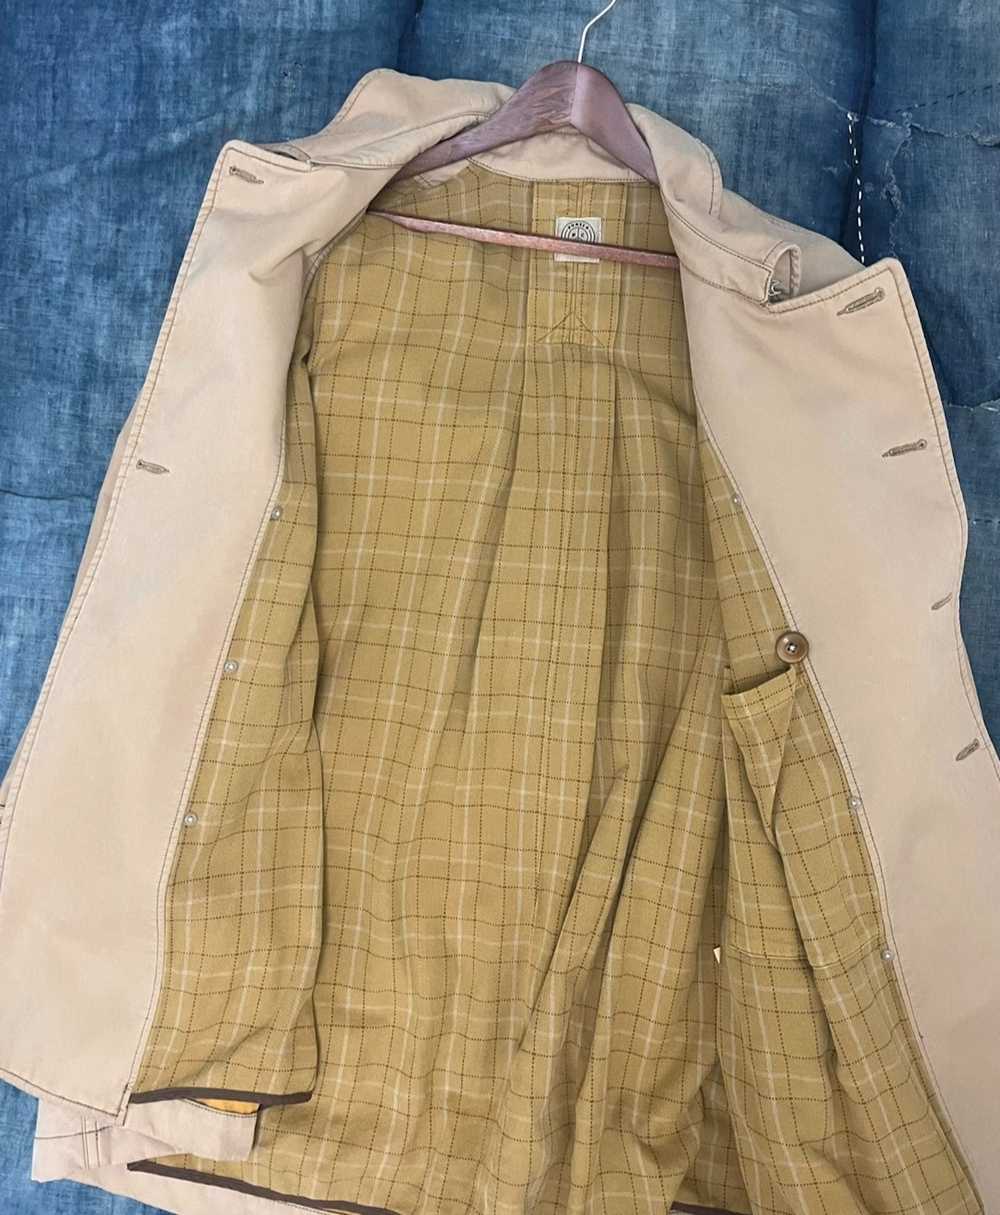 Porter Classic porter classic coat - image 6